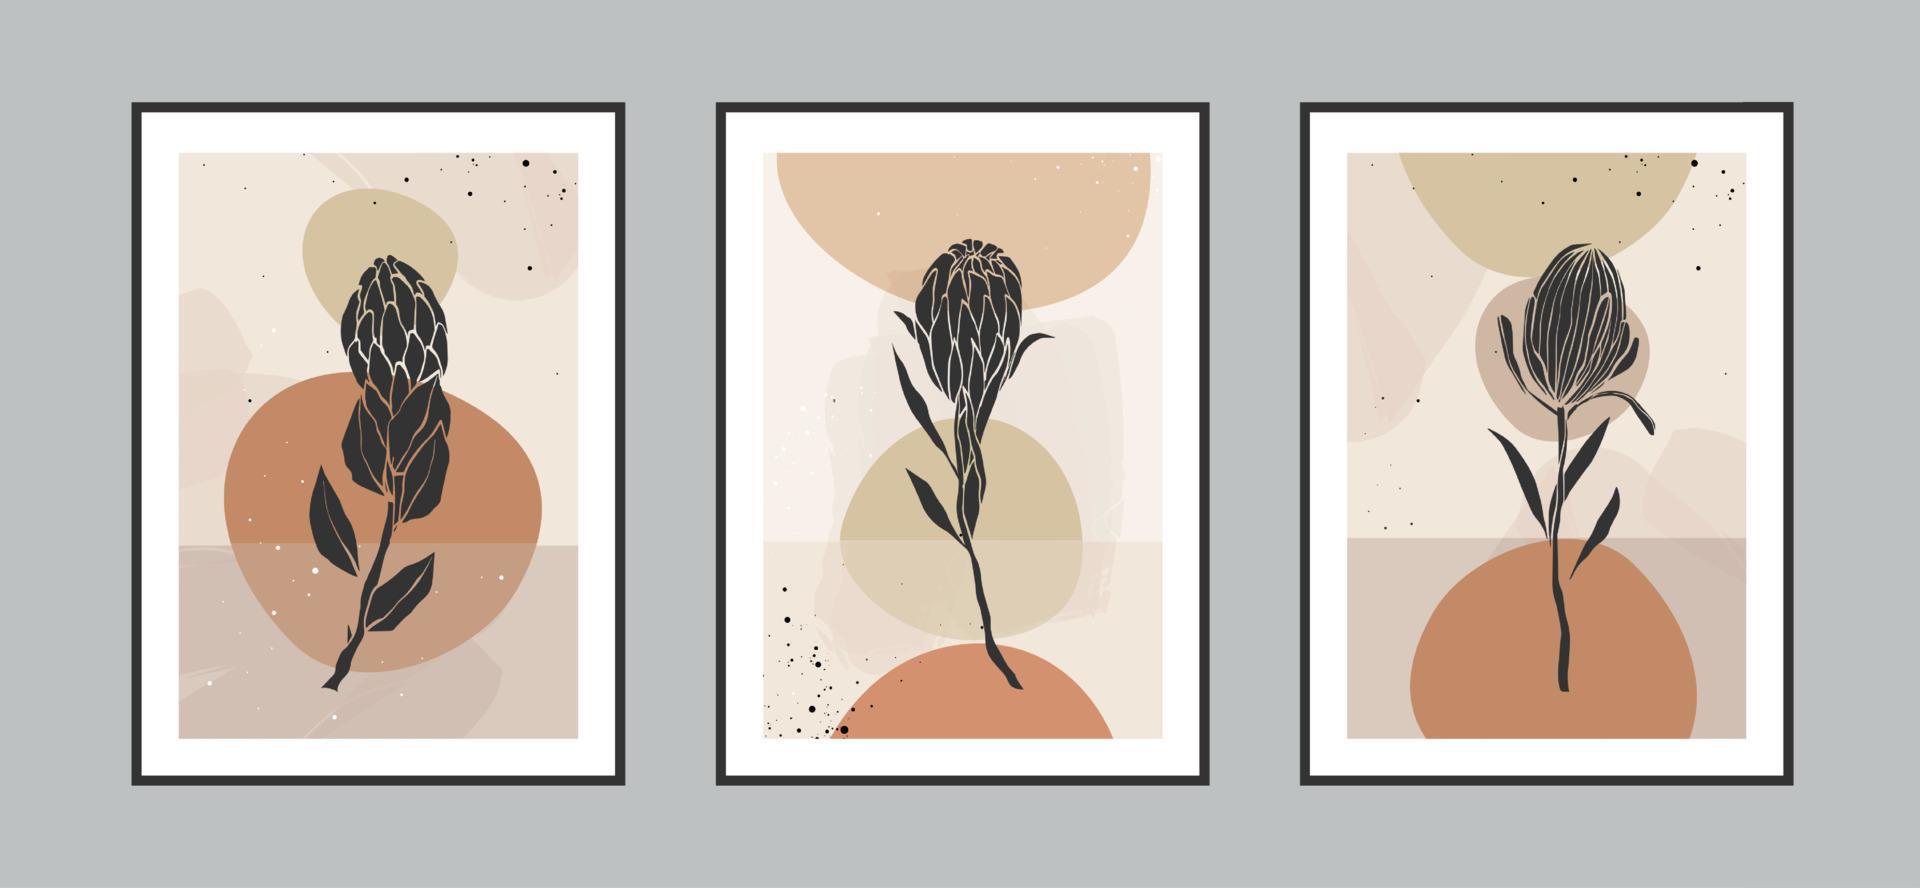 modern abstrakt proteablomma och tropiska löv linjekonstbakgrund med olika former för väggdekoration, vykort eller broschyromslagsdesign. vektor illustrationer design